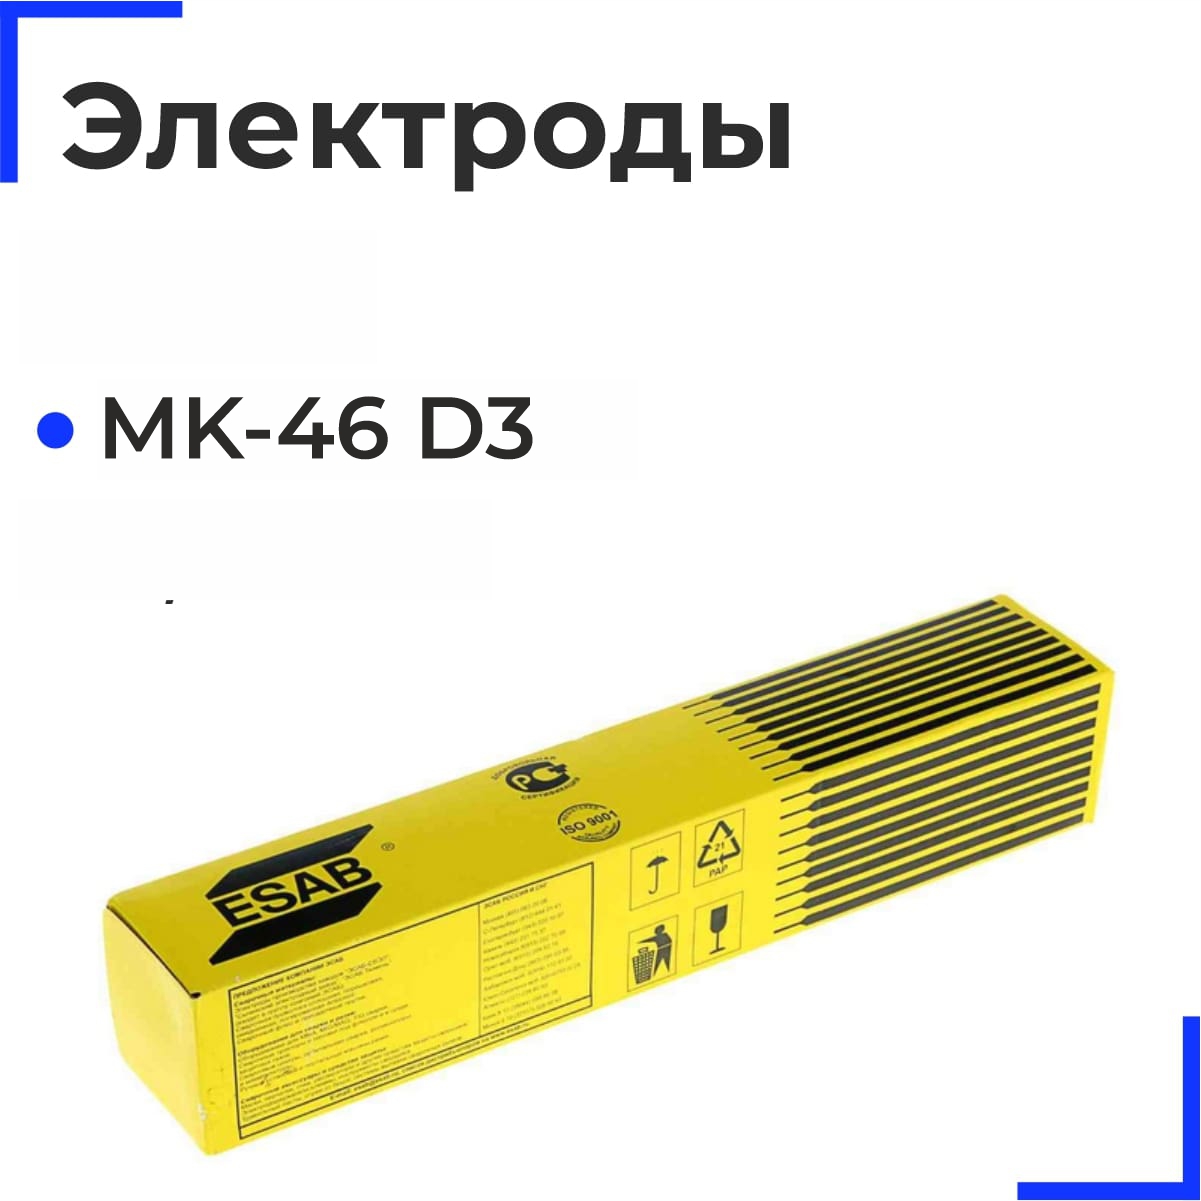 МК-46 D3 Электроды 